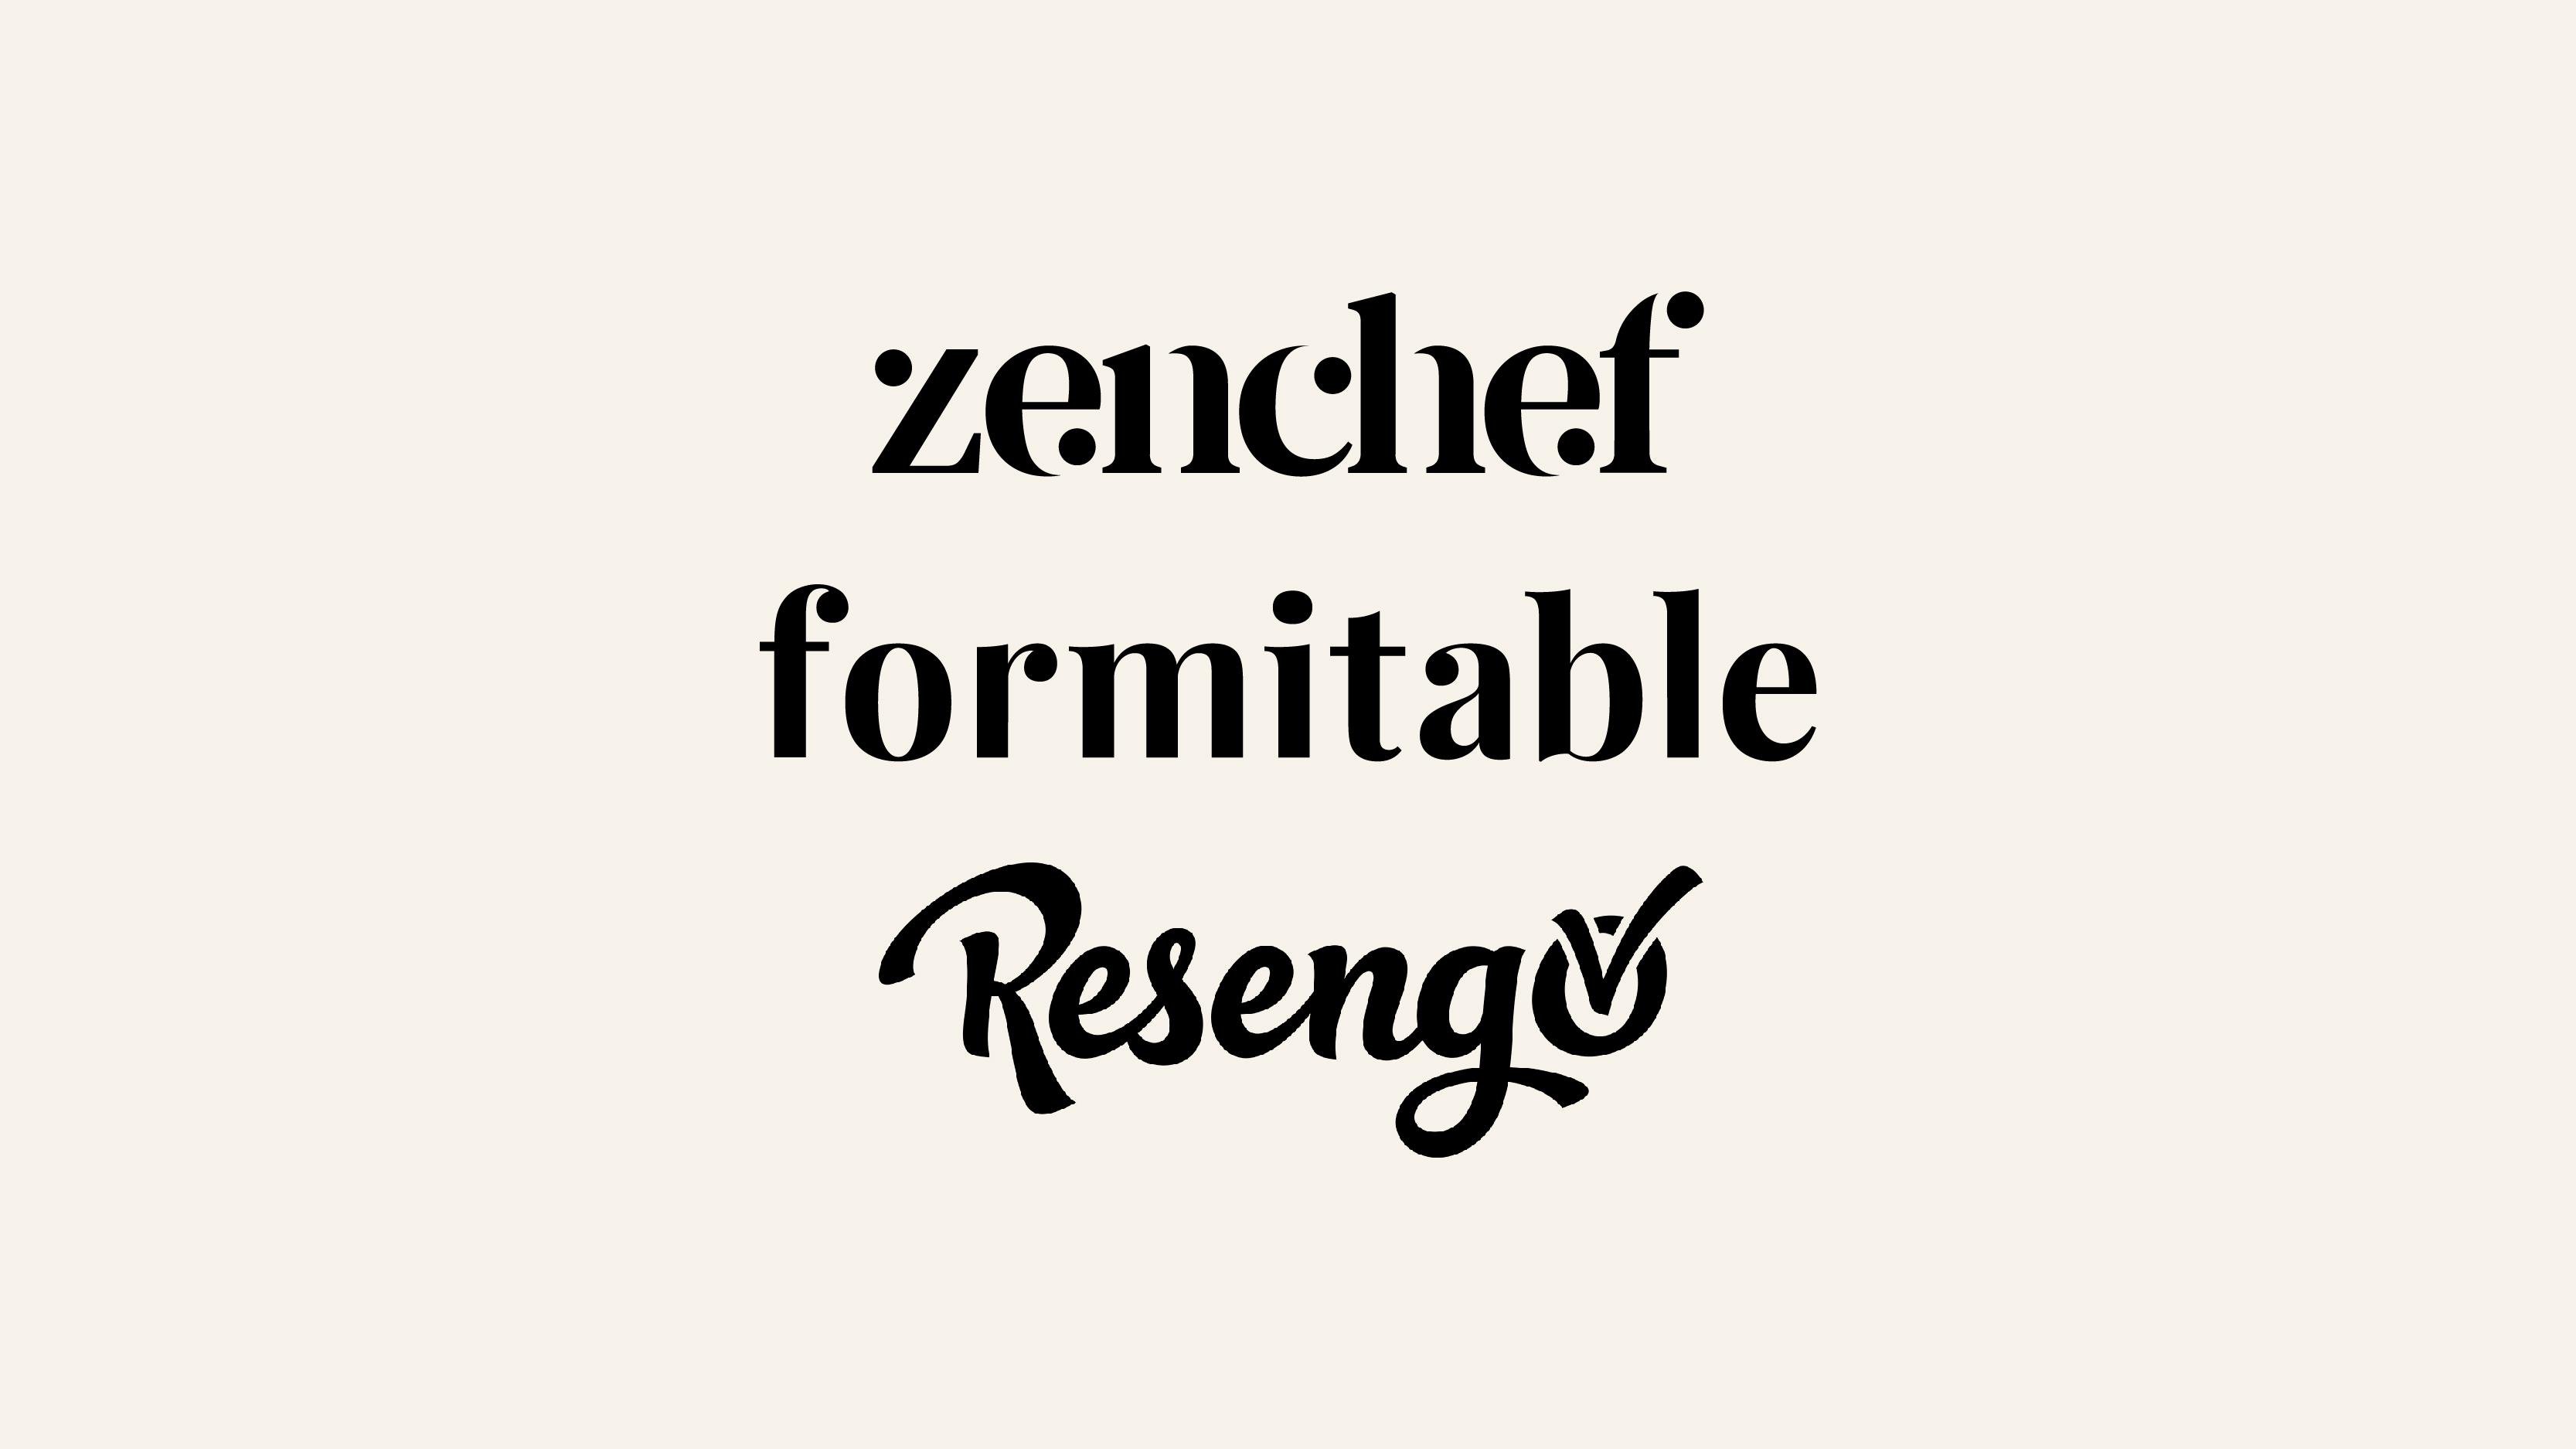 De Zenchef | Formitable group neemt het online reserveringsplatform Resengo over.